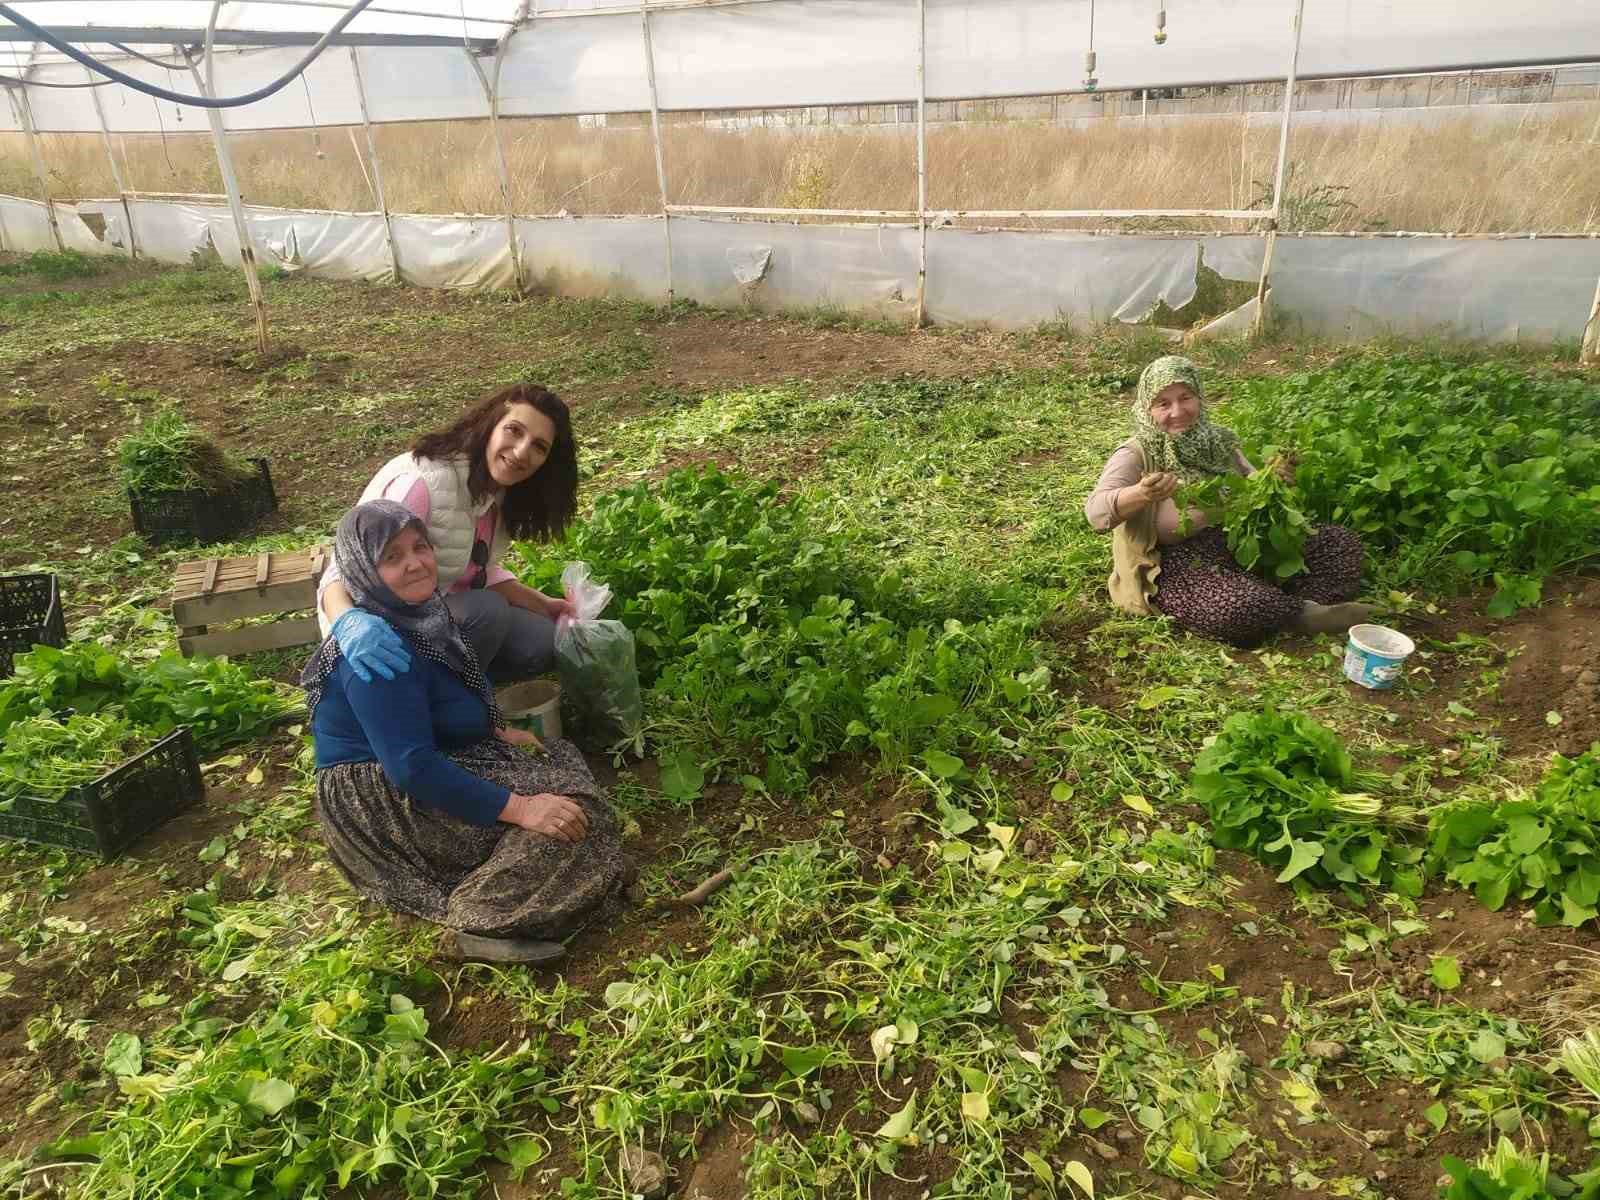 Eskişehir’de sağlıklı tarımsal üretim çalışmaları devam ediyor